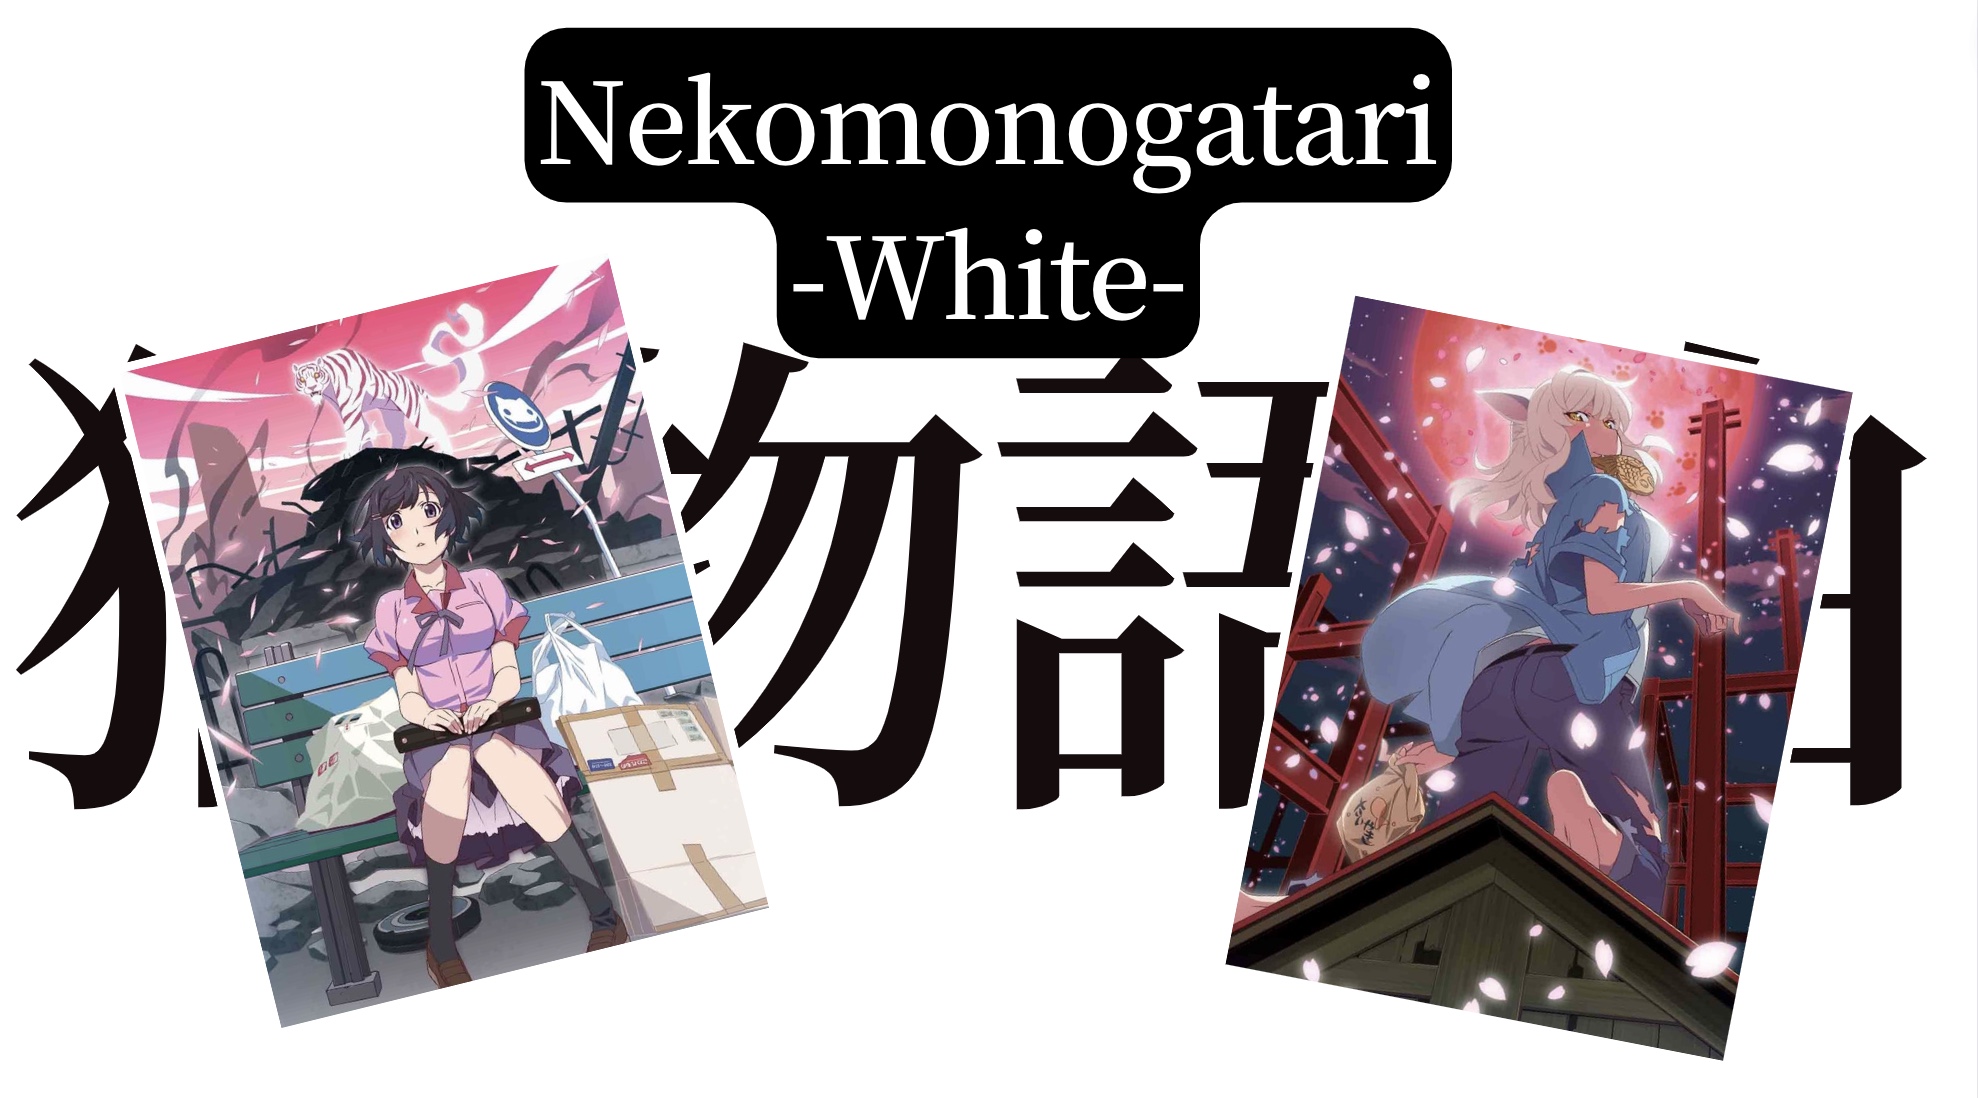 Nekomonogatari (White)